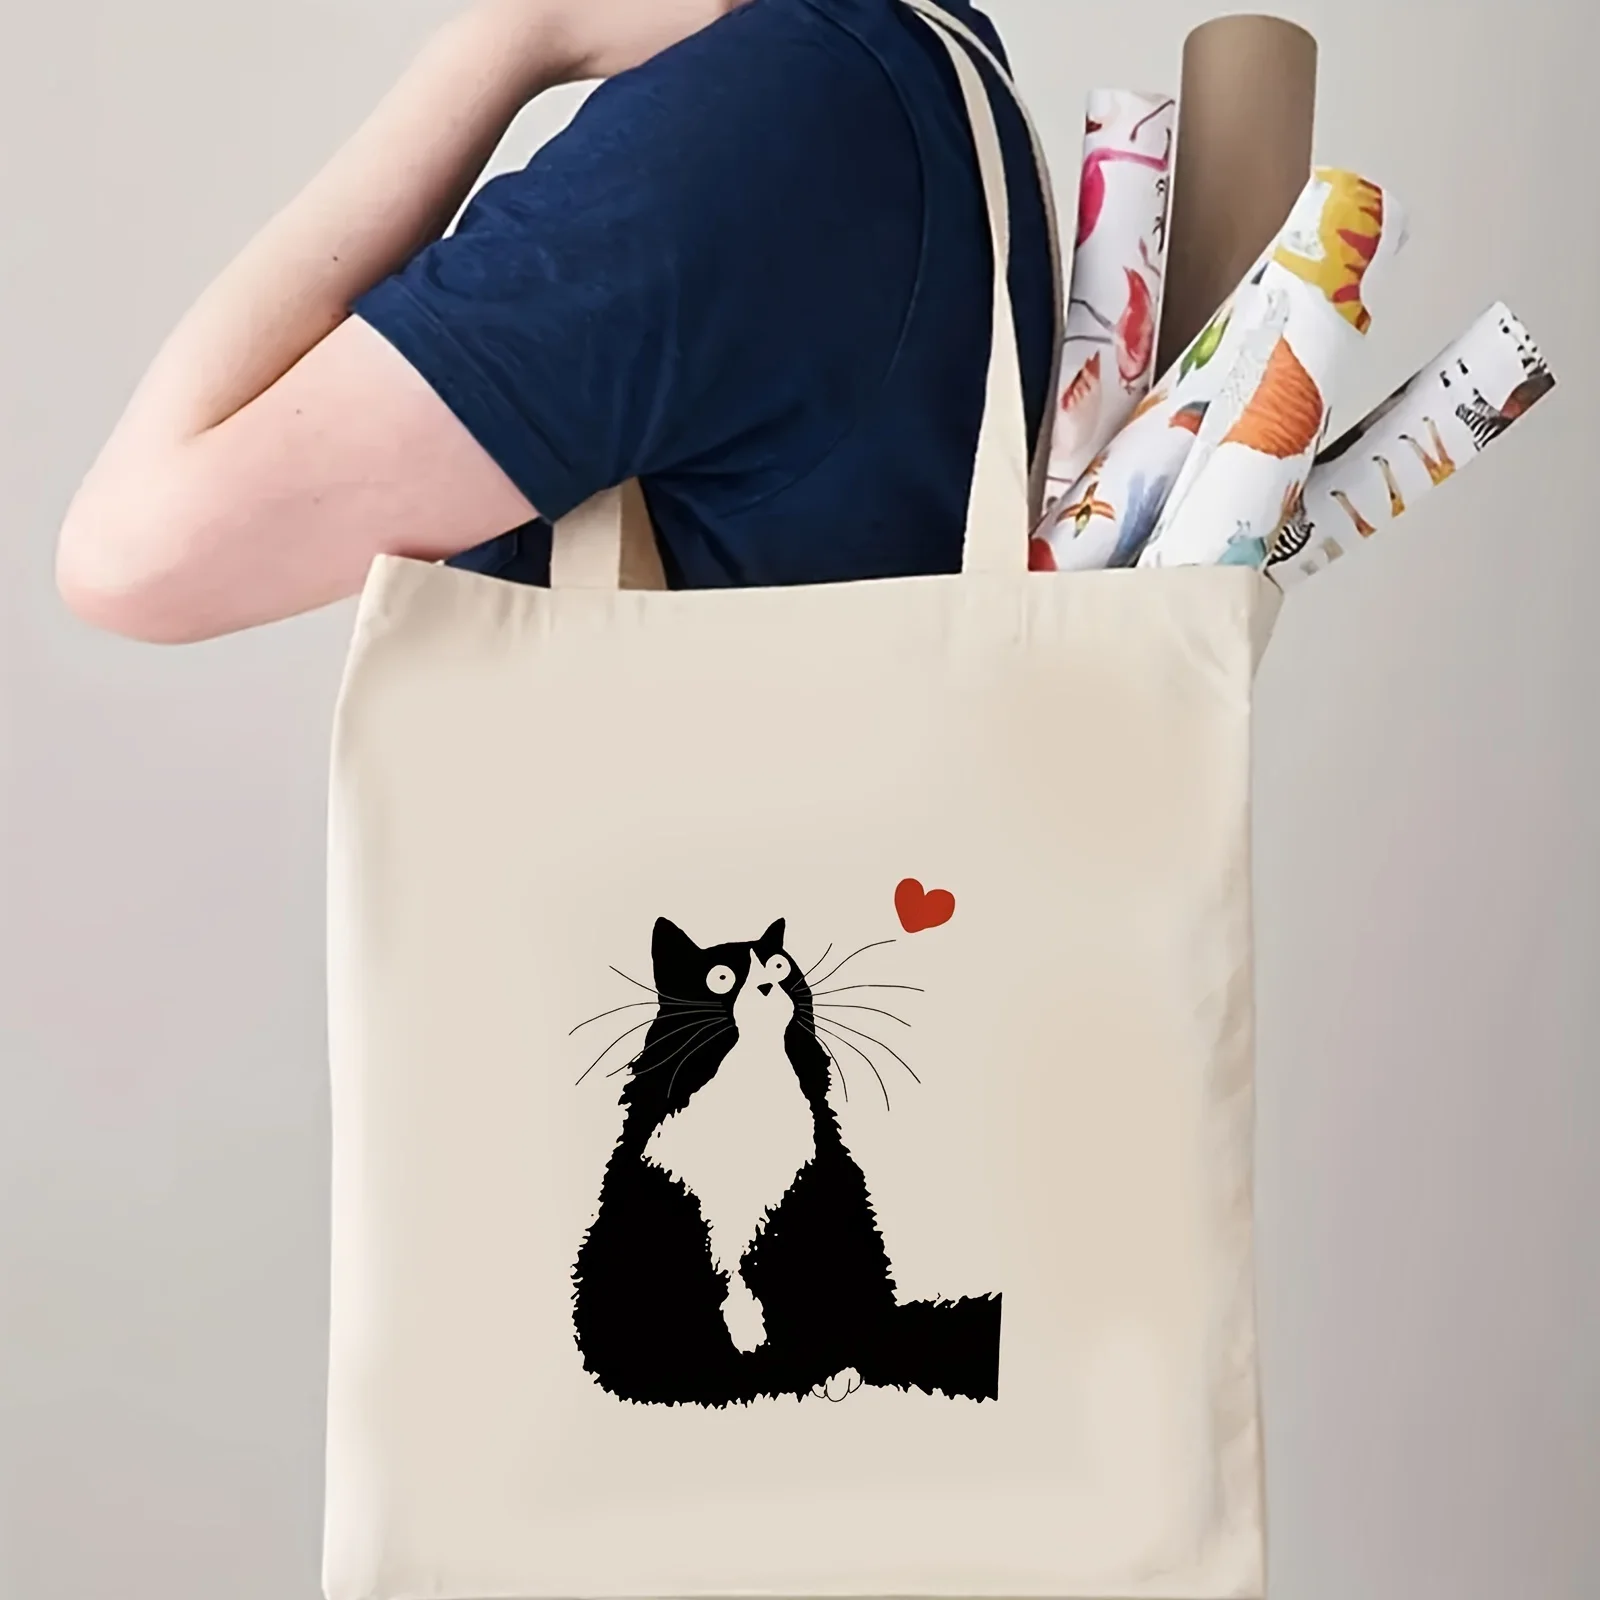 Kawaii Cute Cat Print Tote Bag, Torba na ramię o dużej pojemności, Damska torebka na co dzień do pracy, szkoły, zakupów